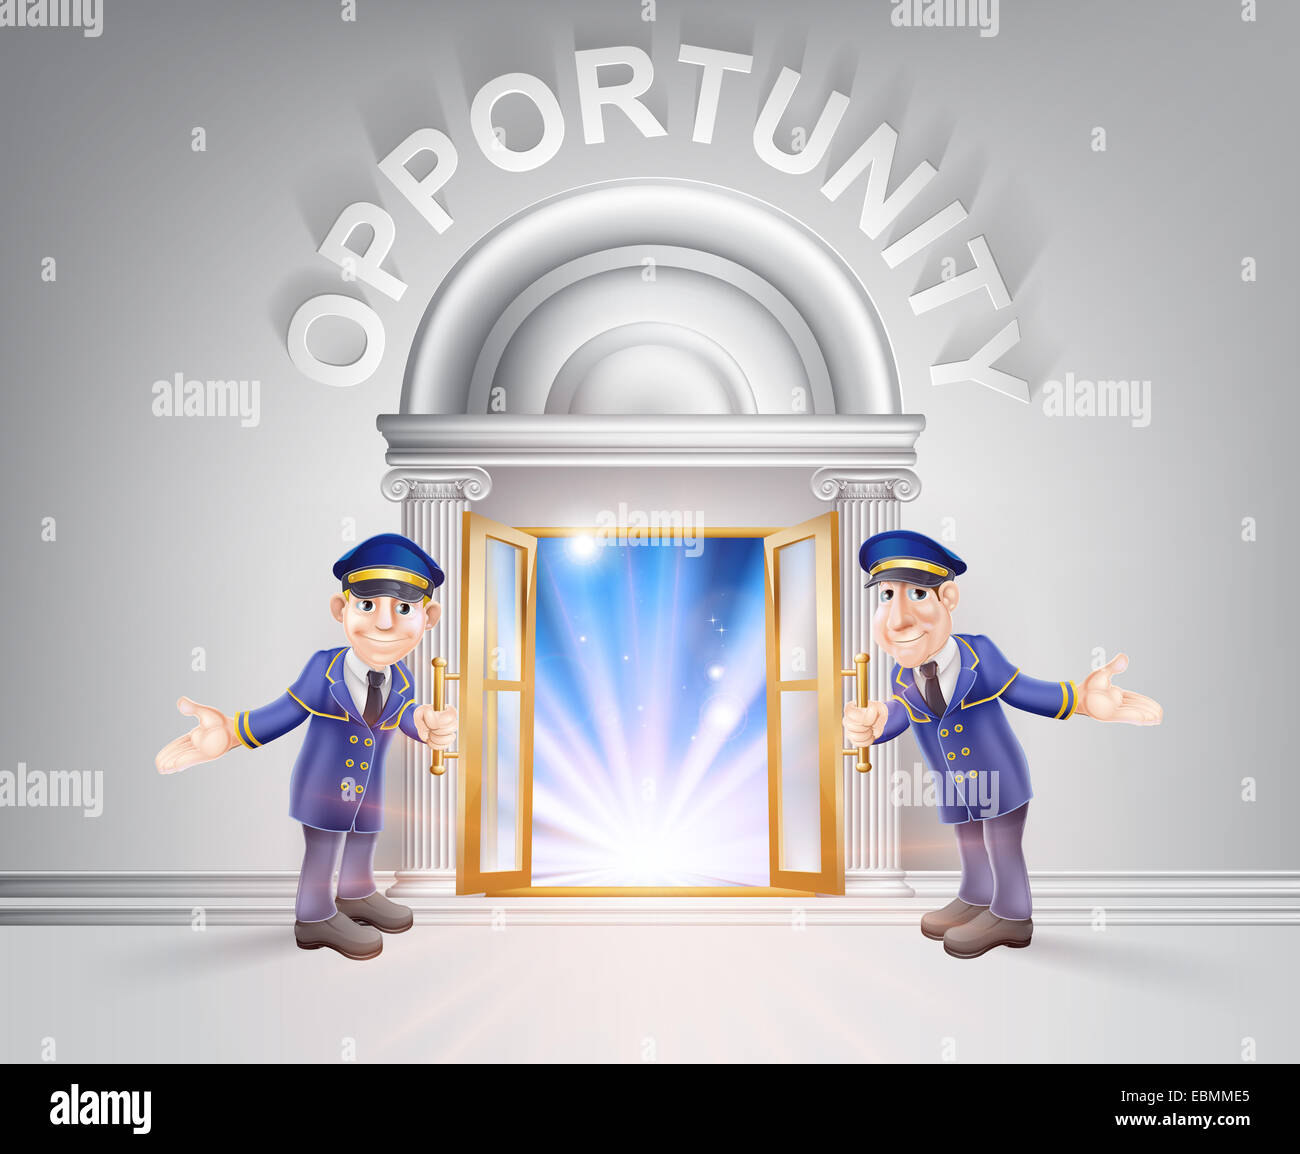 Gelegenheit-Konzept von einem Türsteher Holding Tür Gelegenheit mit Licht strömt durch sie. Stockfoto